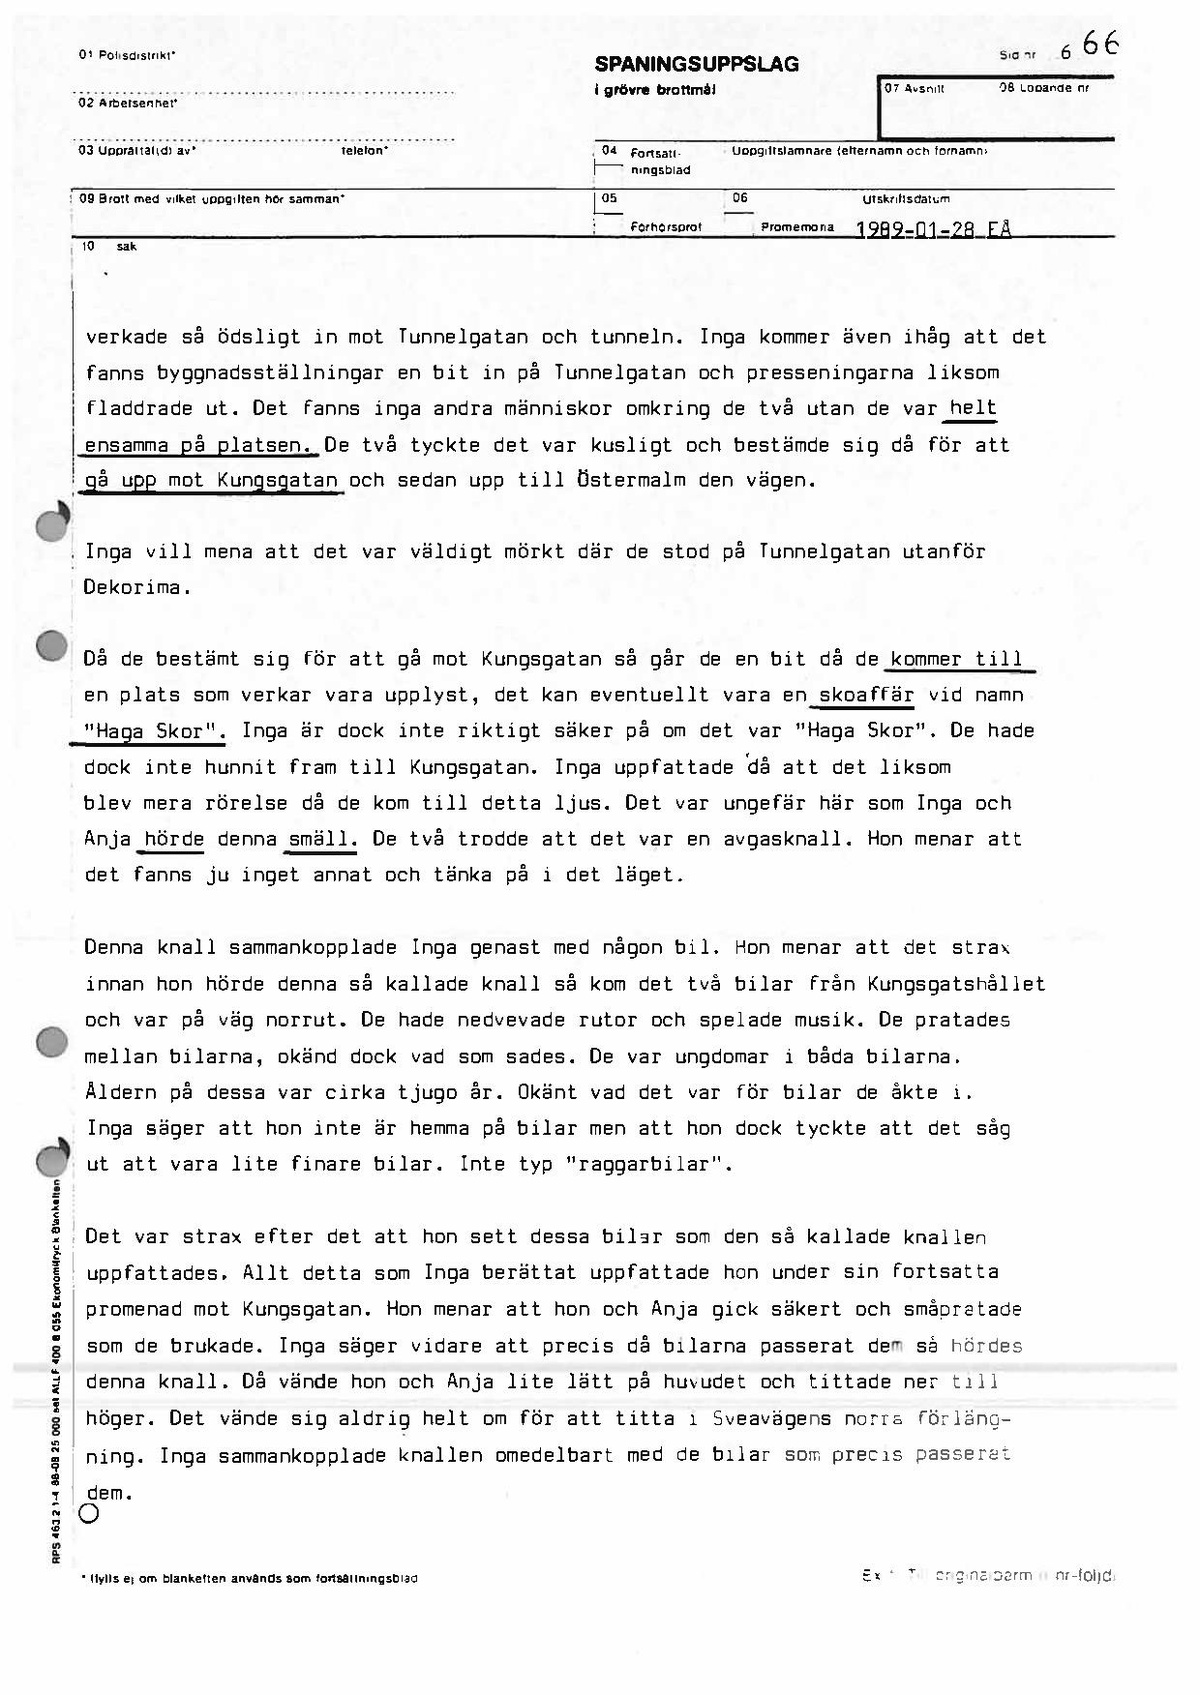 Pol-1989-01-25 1805-1932 L854-01 Inga Ålenius om biobesök och misstänkt man vid insläppet.pdf